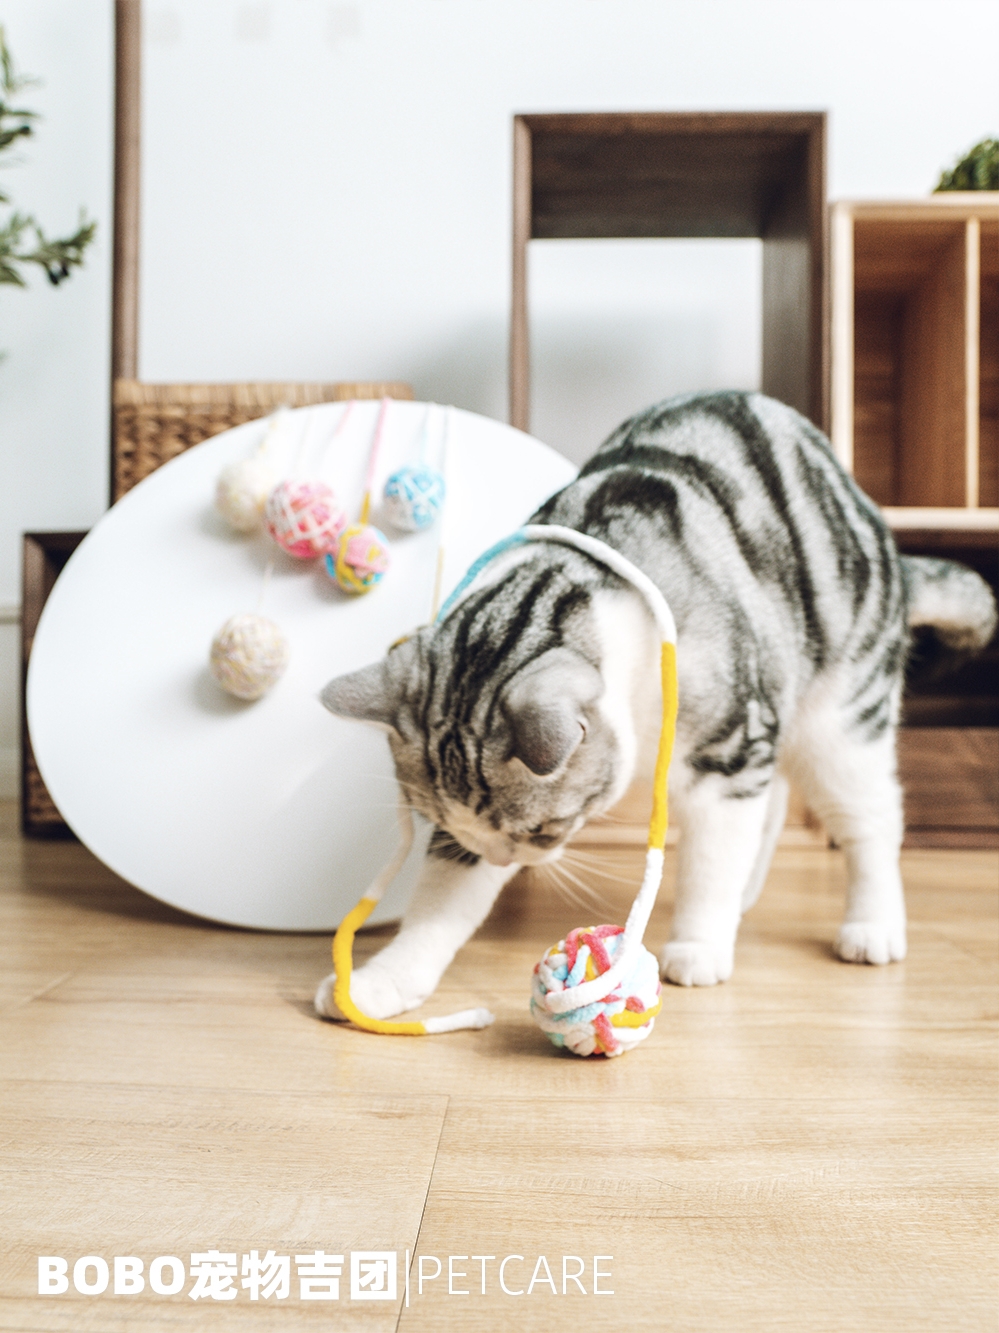 日本多格漫寵物貓玩具球鈴鐺球逗貓器逗貓棒貓抓板貓咪毛線球玩具 (8.3折)